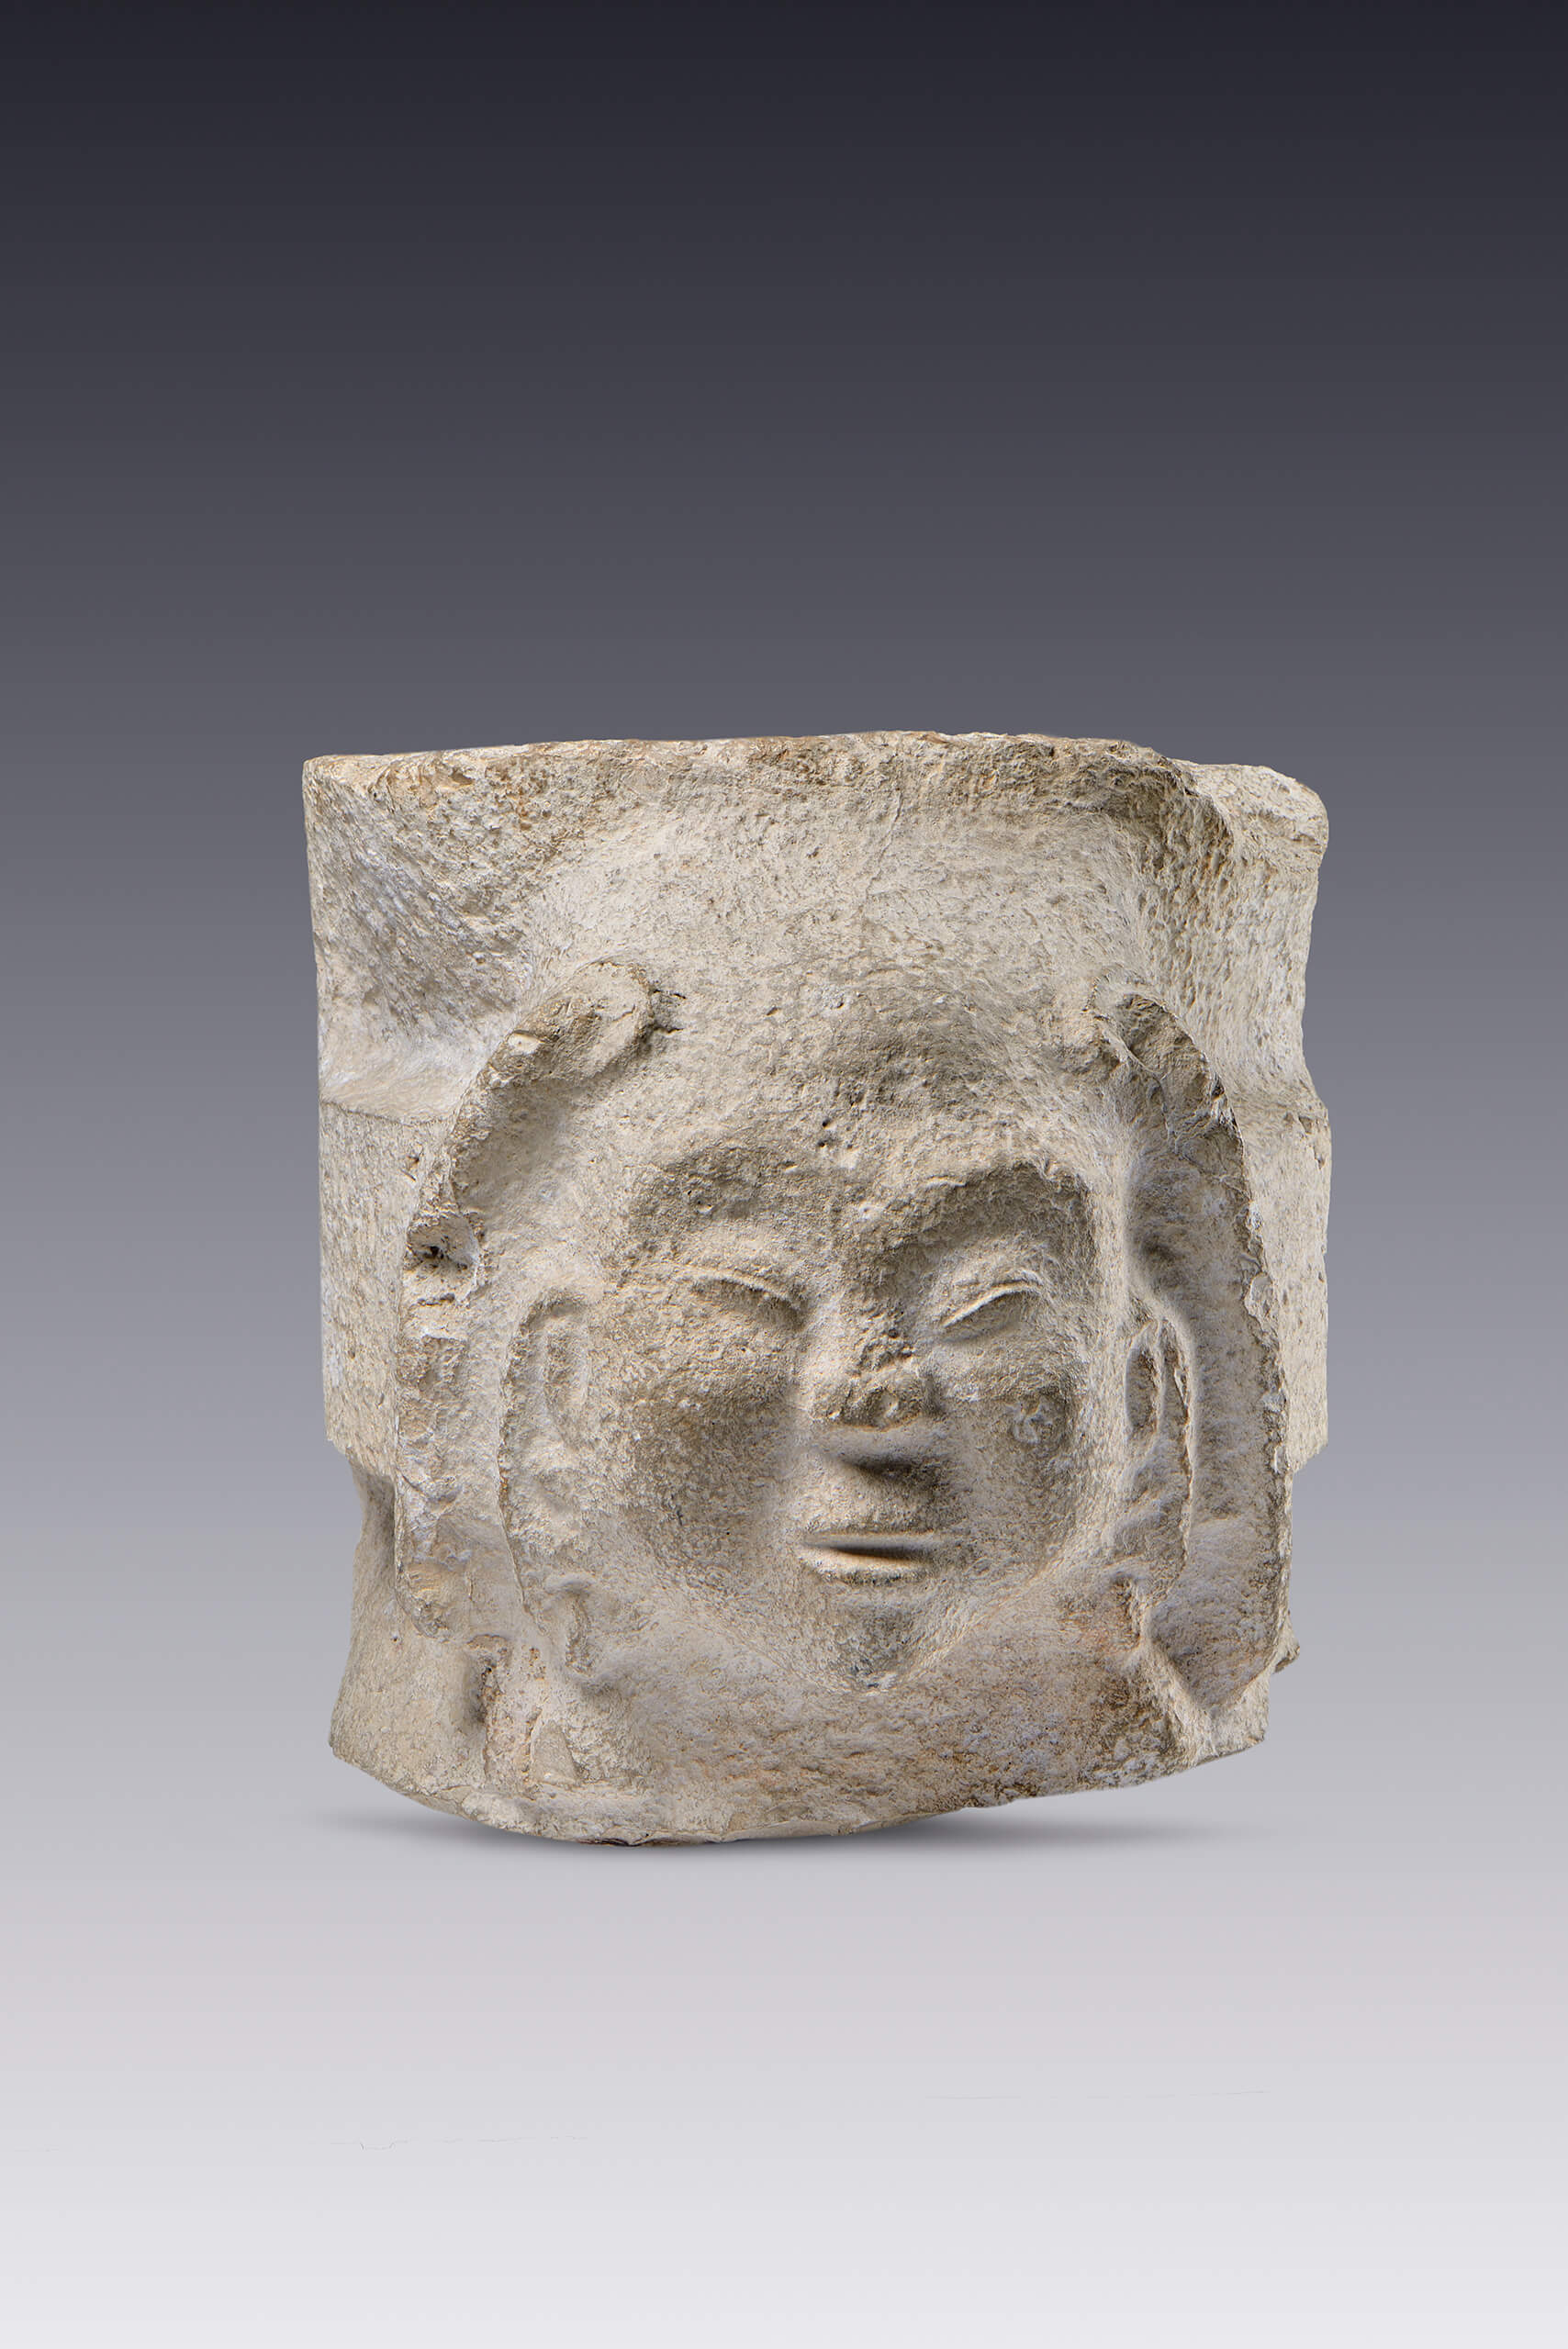 Sillar esculpido con cabeza de personaje | El México antiguo. Salas de Arte Prehispánico | Museo Amparo, Puebla